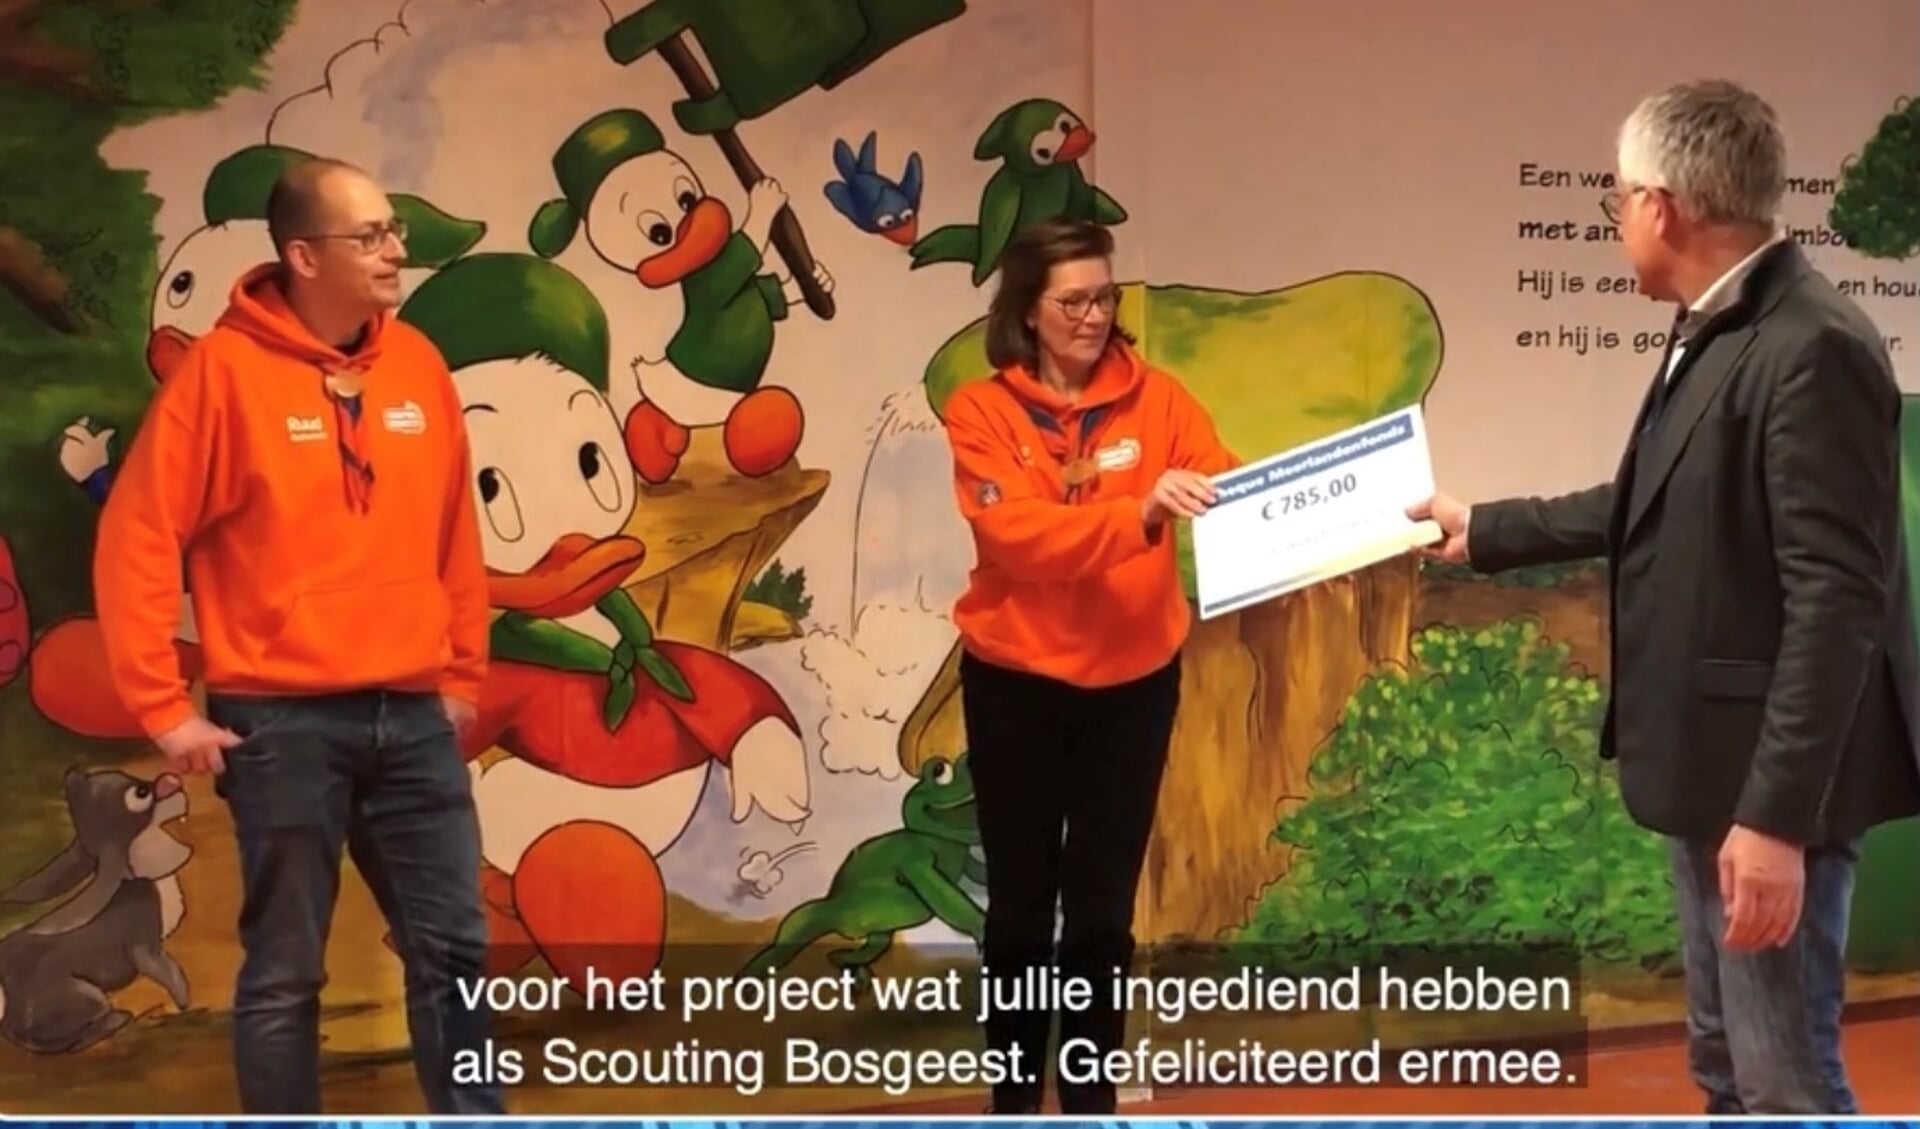 Wethouder Sjaak van den Berg overhandigt de cheque. | Foto: still uit het filmpje.